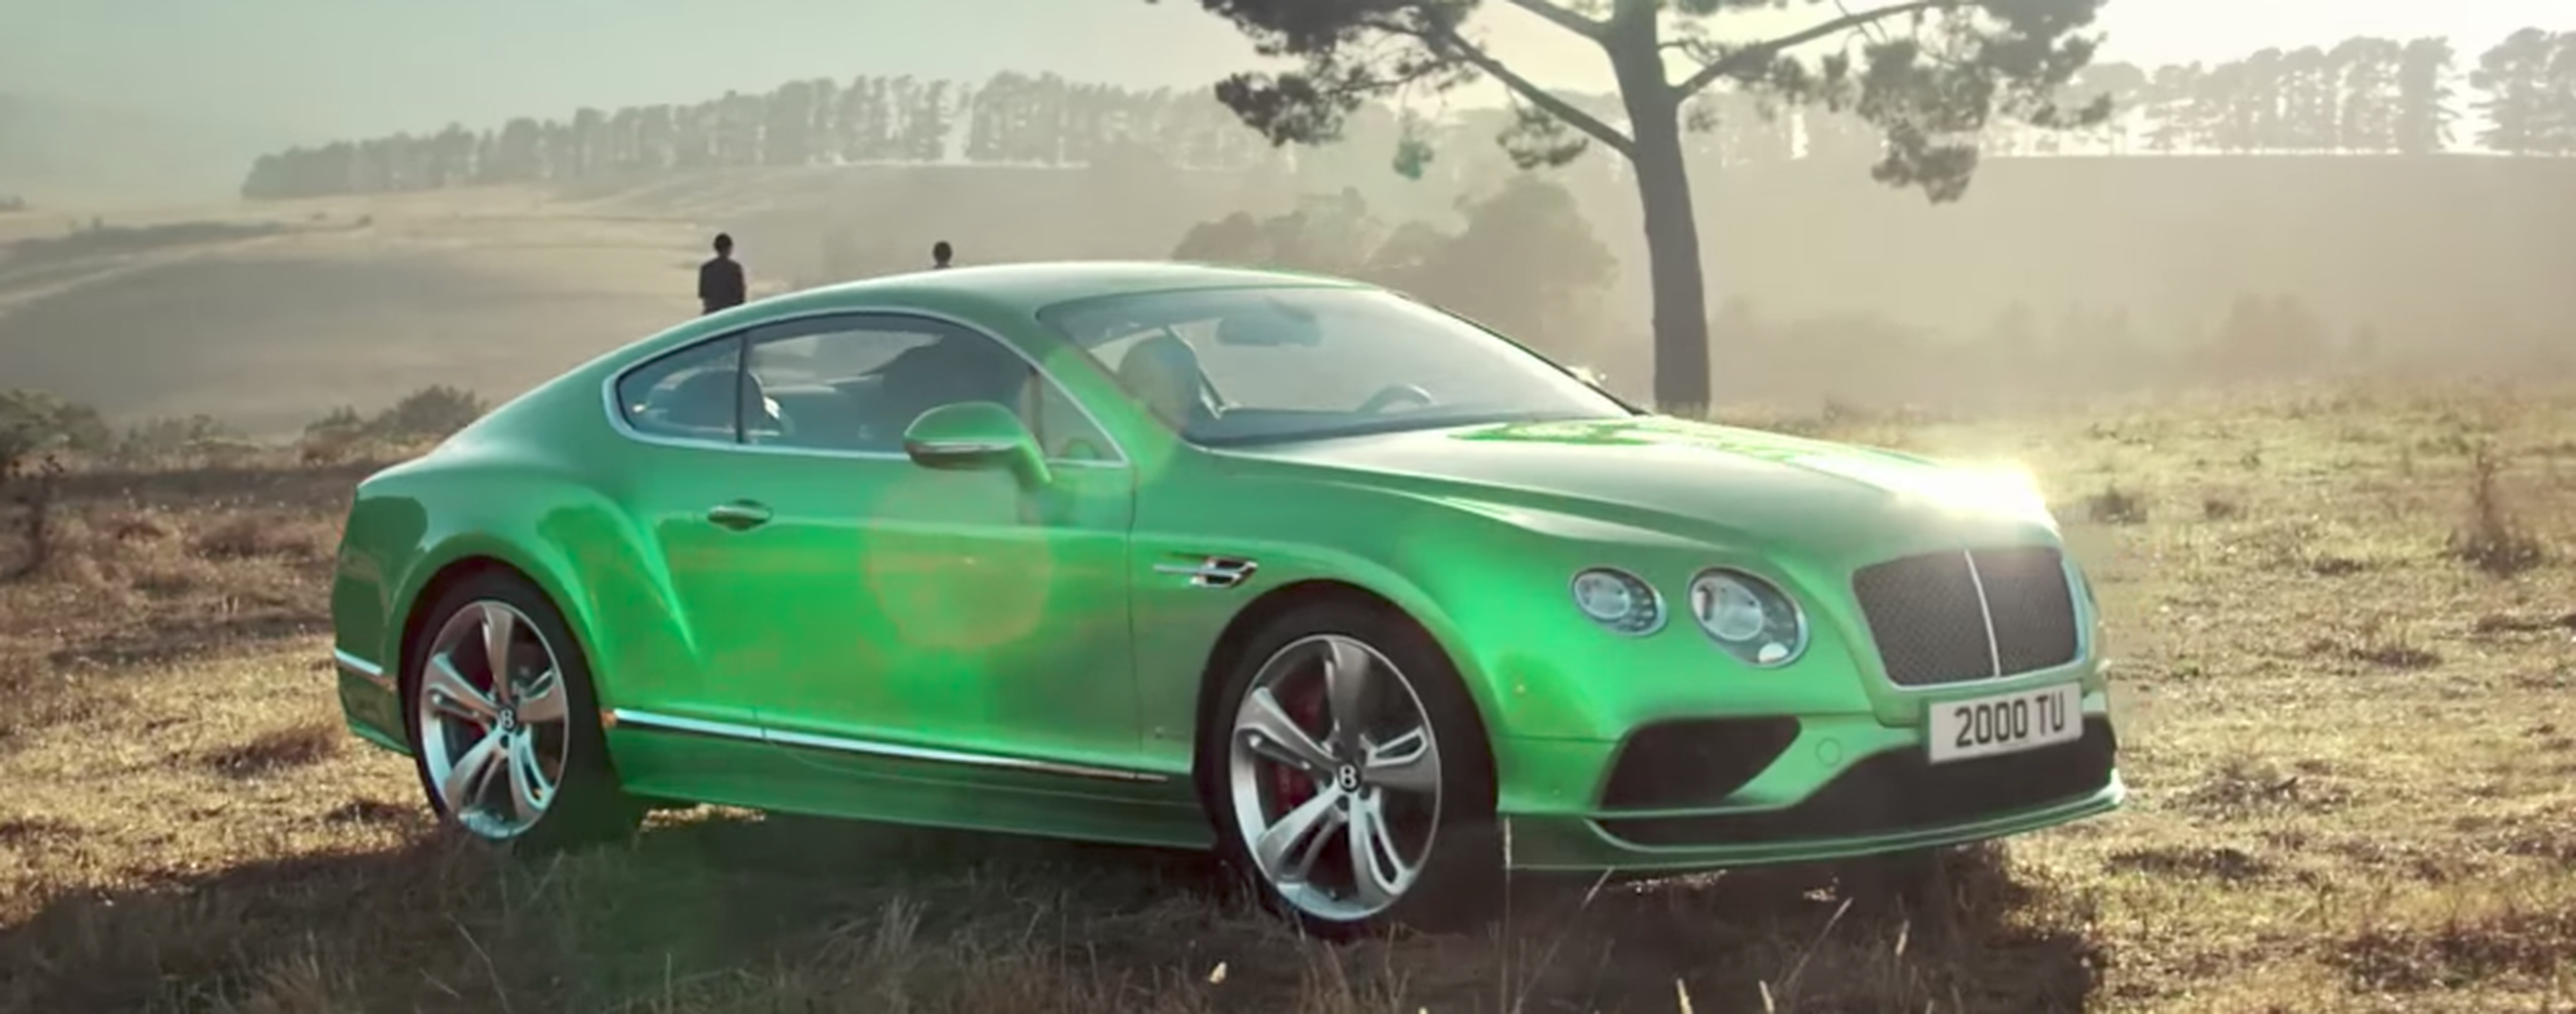 VÍDEO: Variantes del Bentley Continental GT, ¿cuál es la tuya?